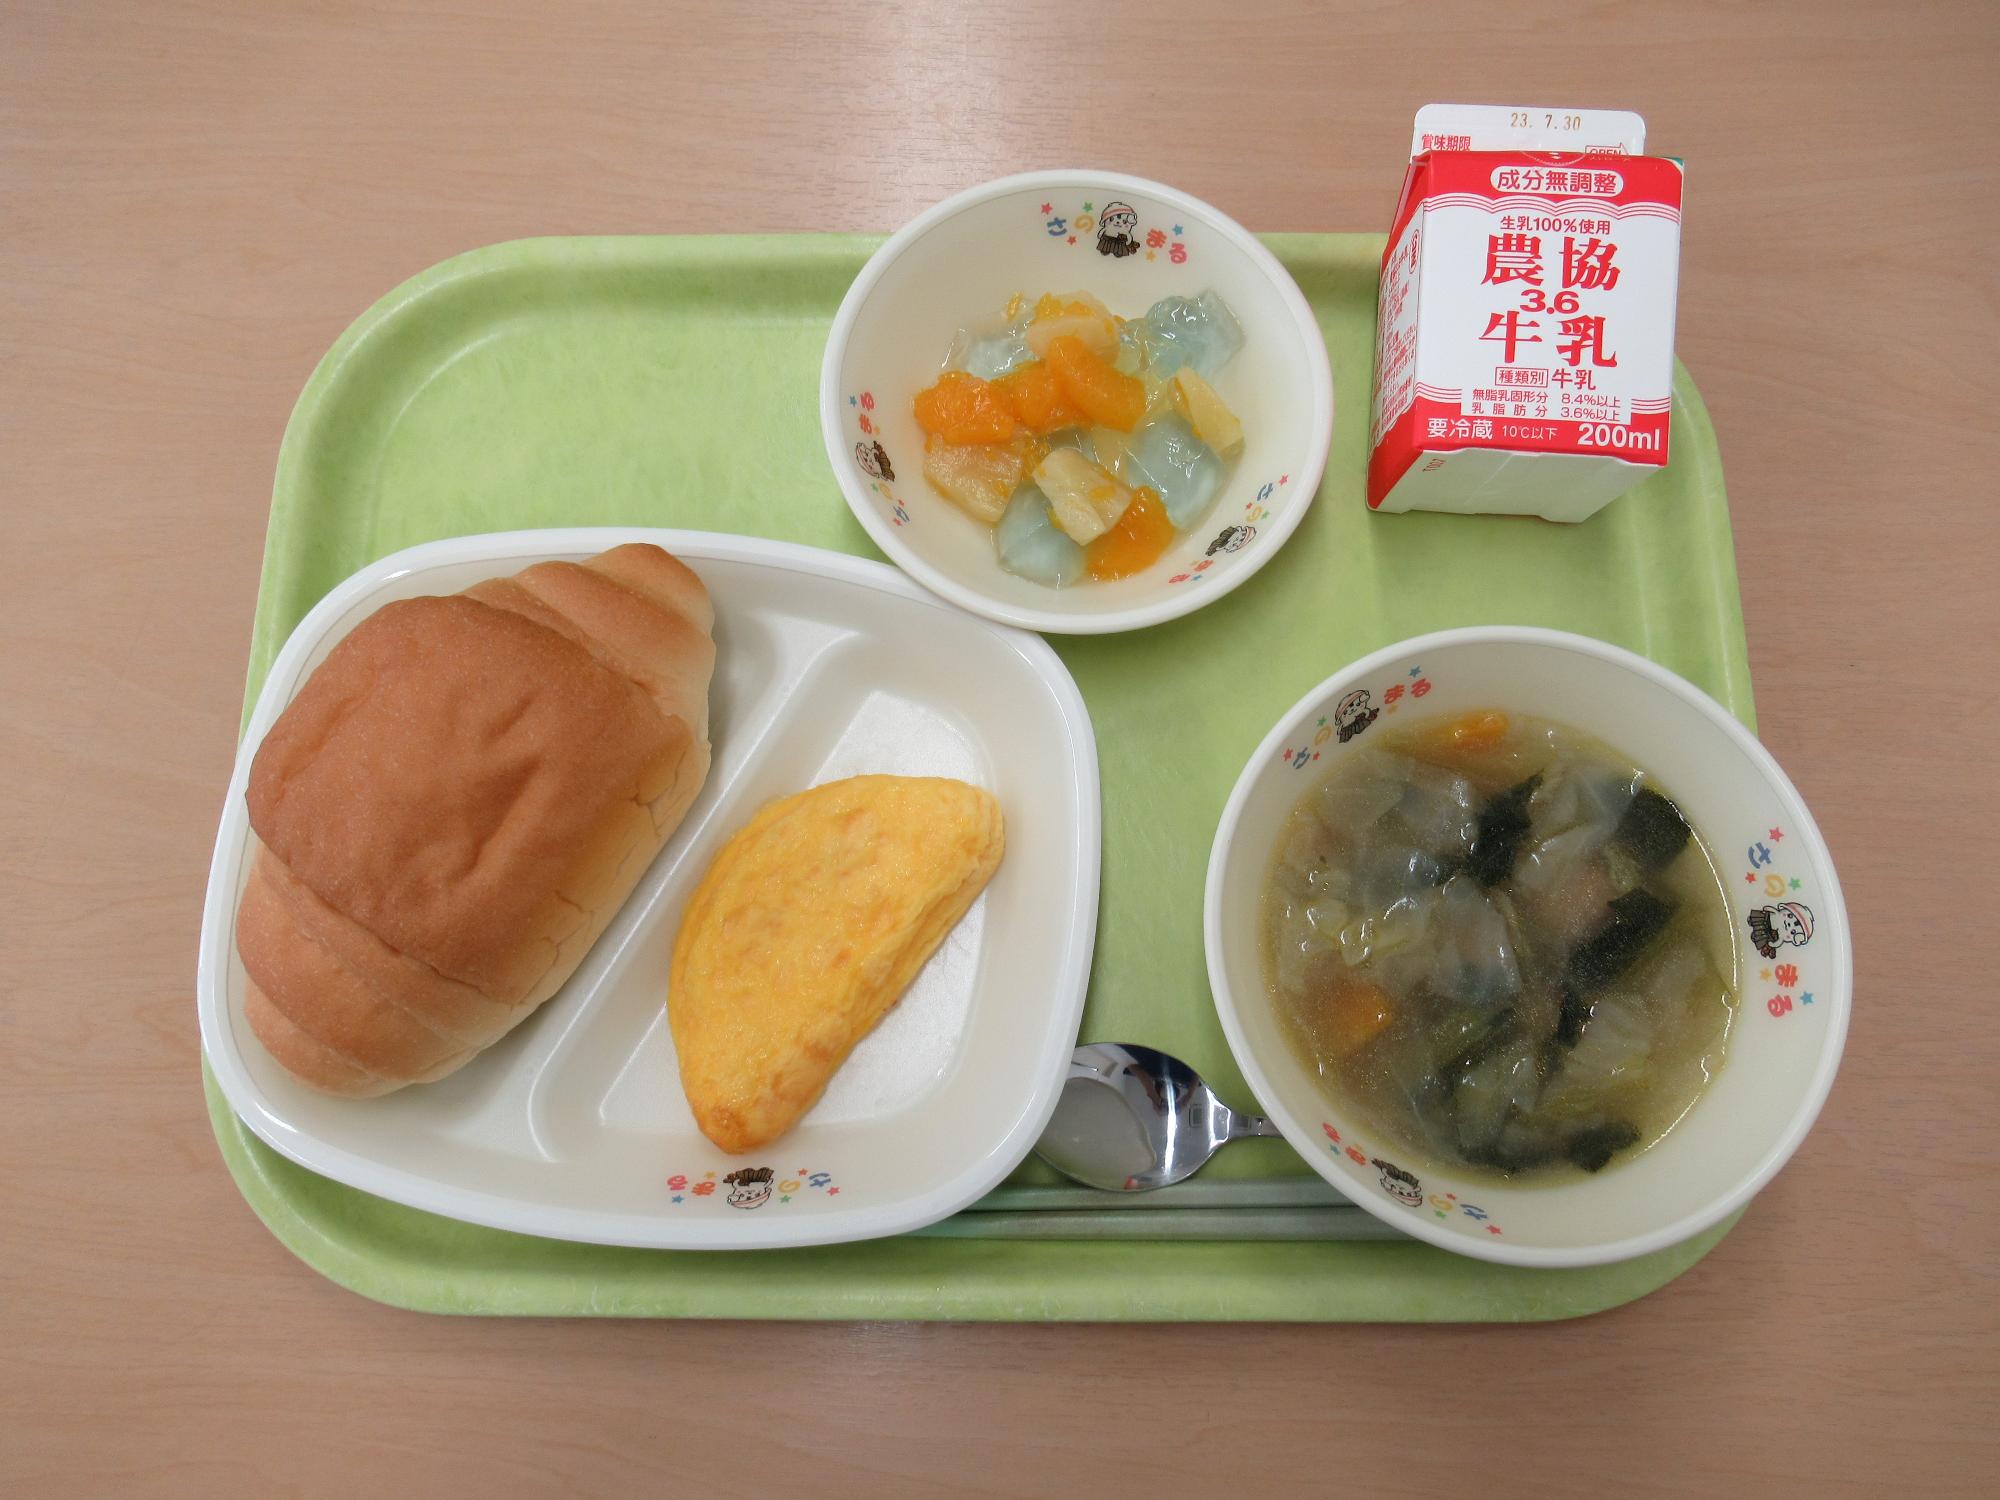 令和5年7月19日南部学校給食センター給食写真